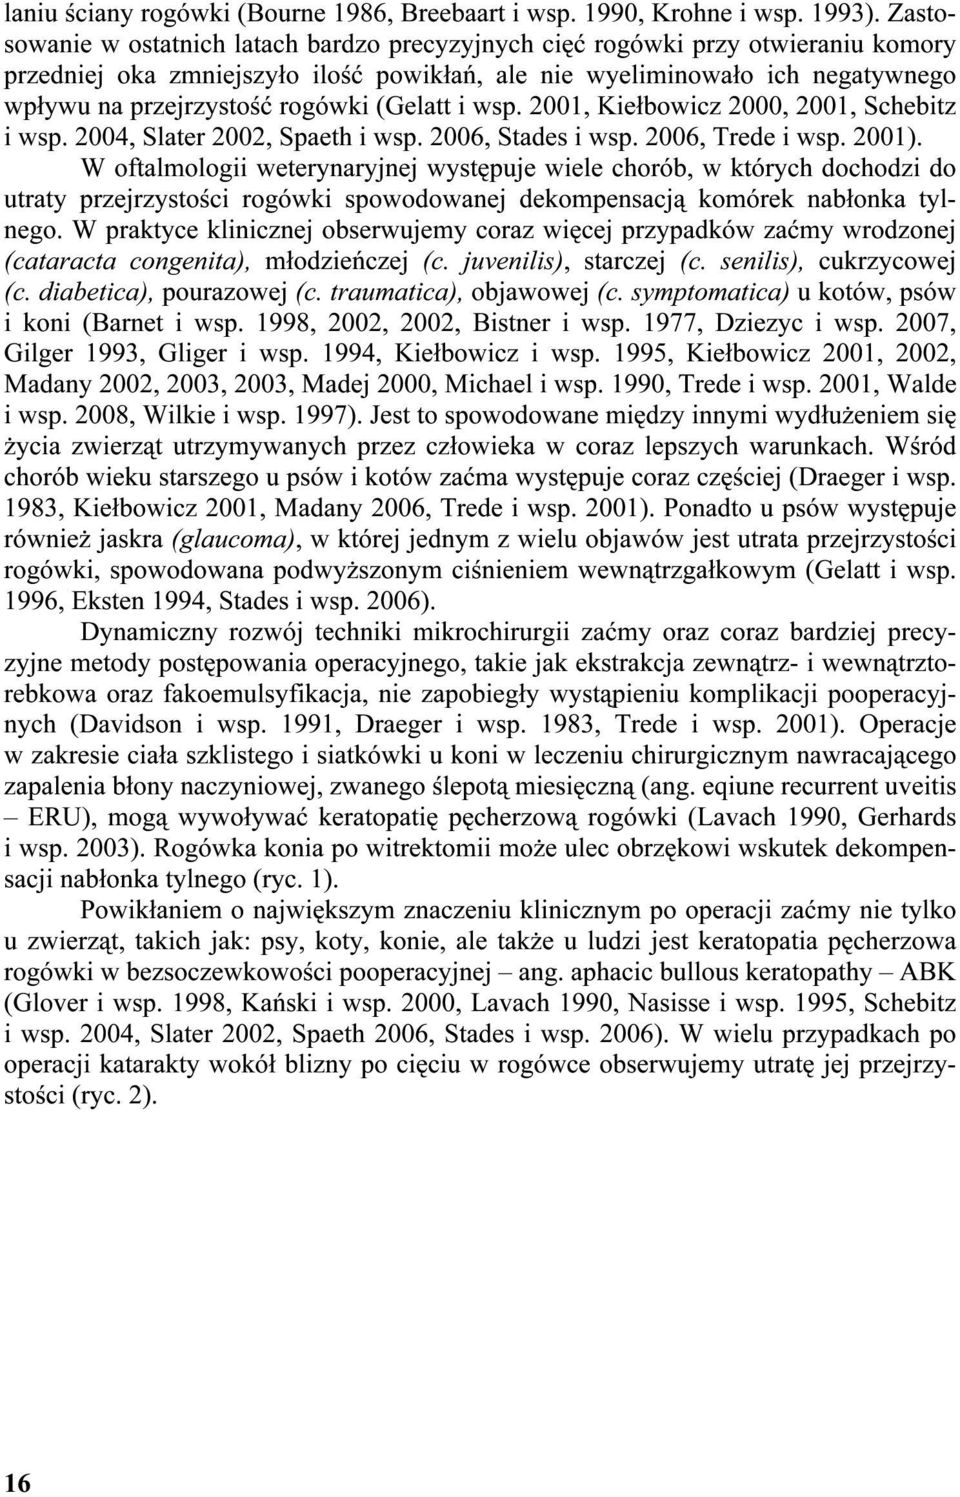 (Gelatt i wsp. 2001, Kiełbowicz 2000, 2001, Schebitz i wsp. 2004, Slater 2002, Spaeth i wsp. 2006, Stades i wsp. 2006, Trede i wsp. 2001).